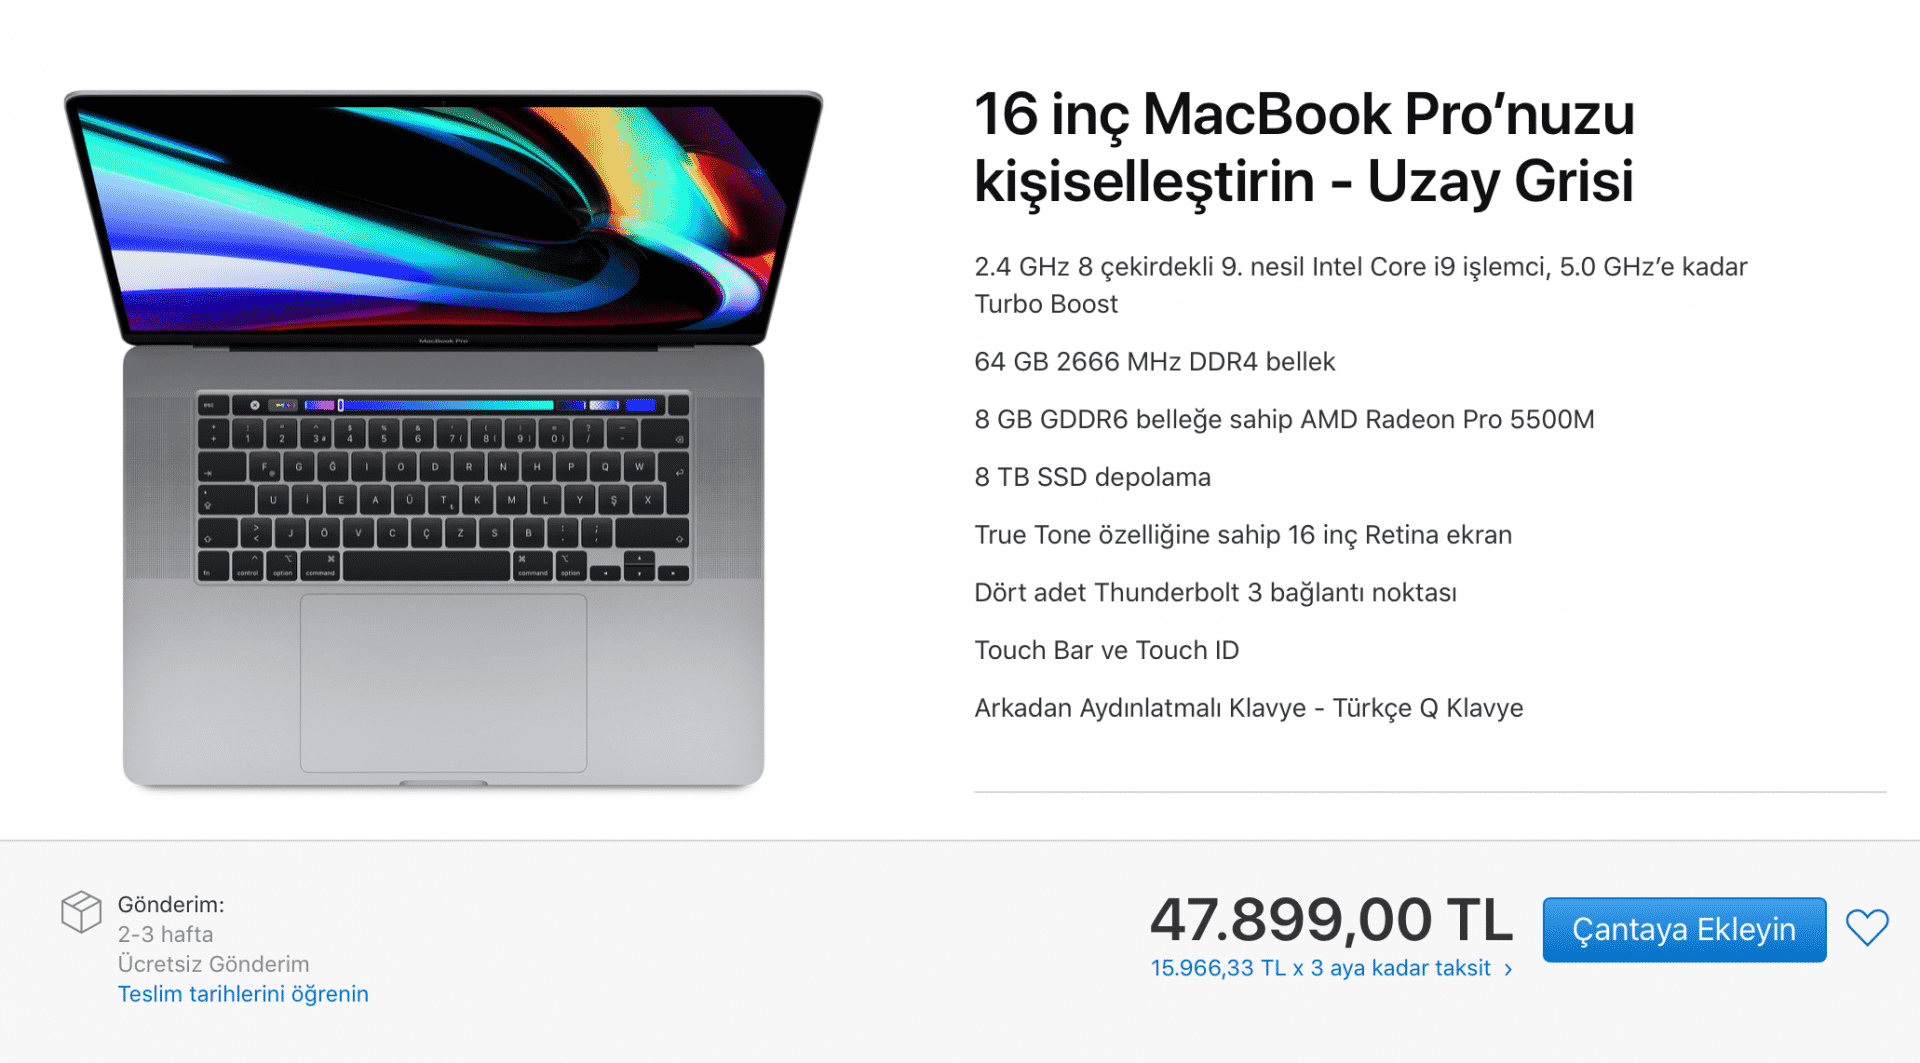 En yüksek donanıma sahip 16 inç MacBook Pro fiyatı nedir?